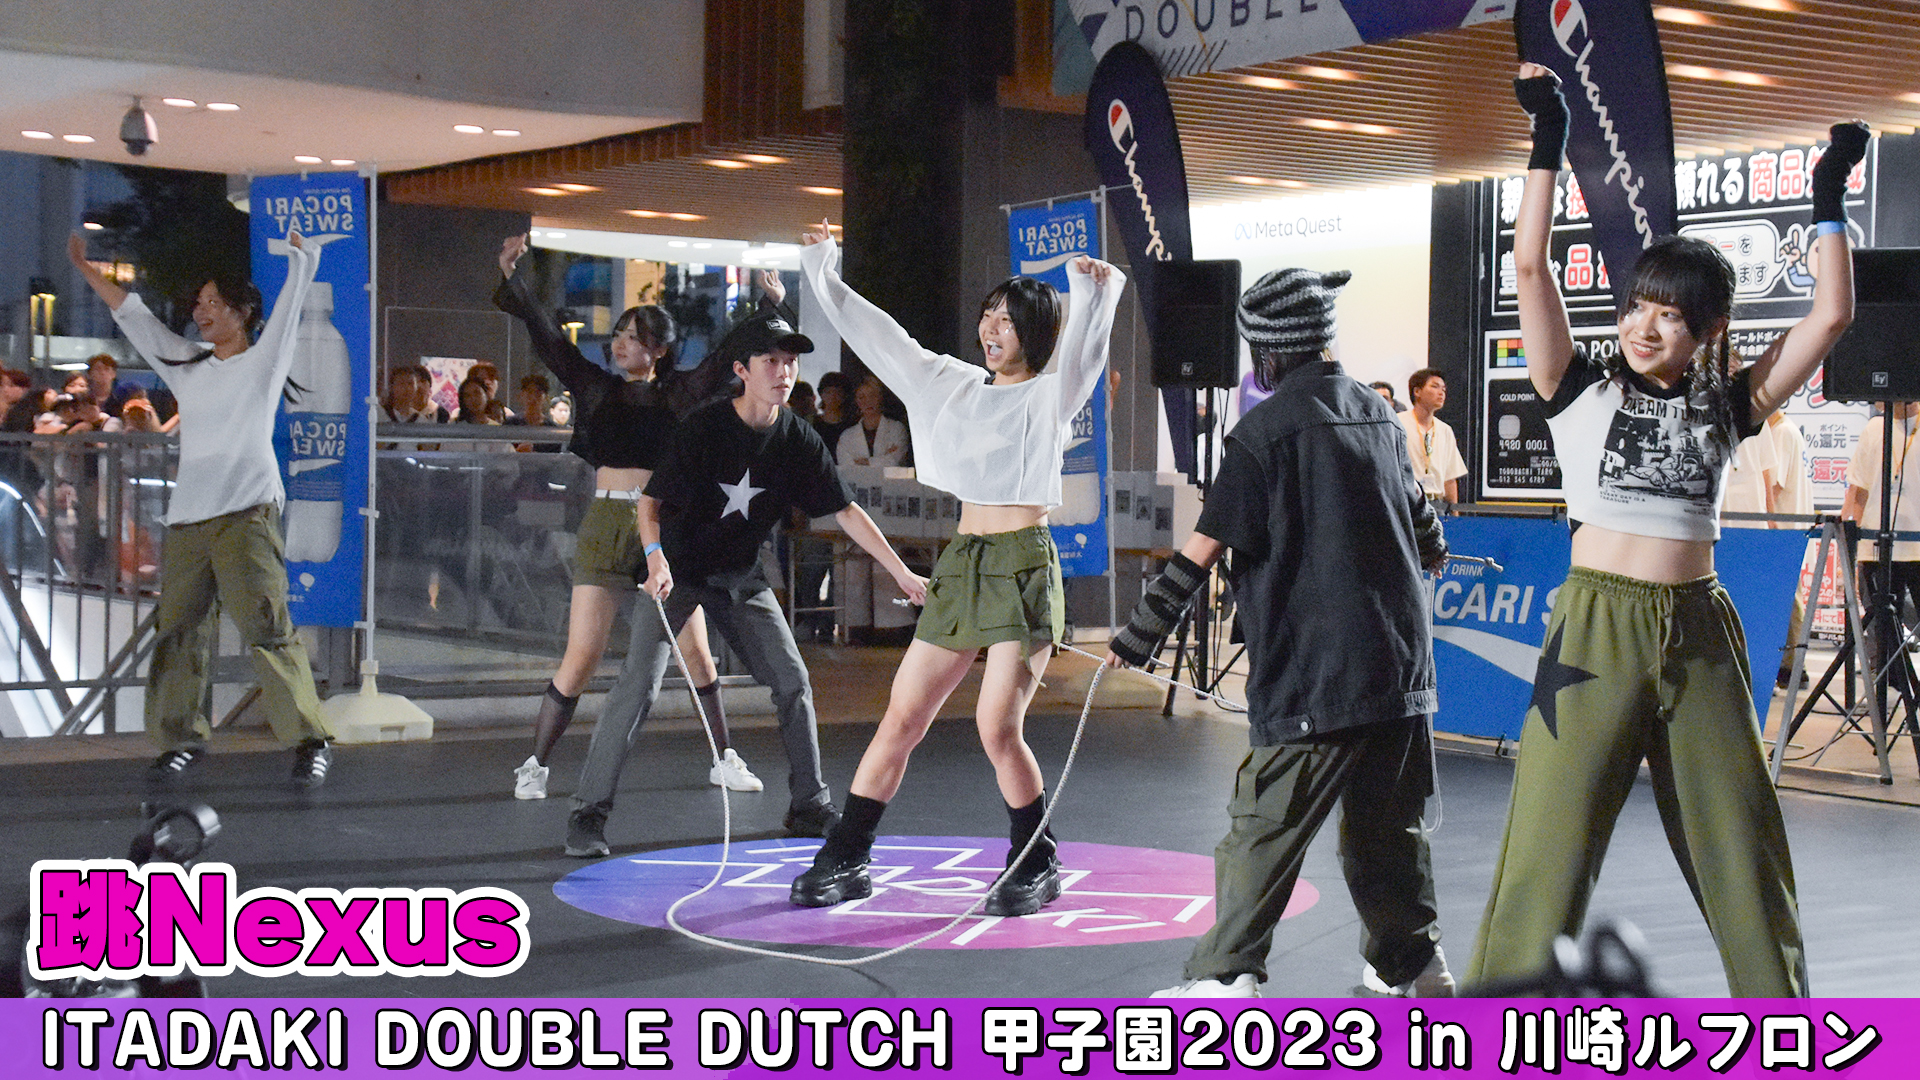 【動画】「跳Nexus」がパフォーマンスを披露！＜ITADAKIダブルダッチ甲子園2023＞